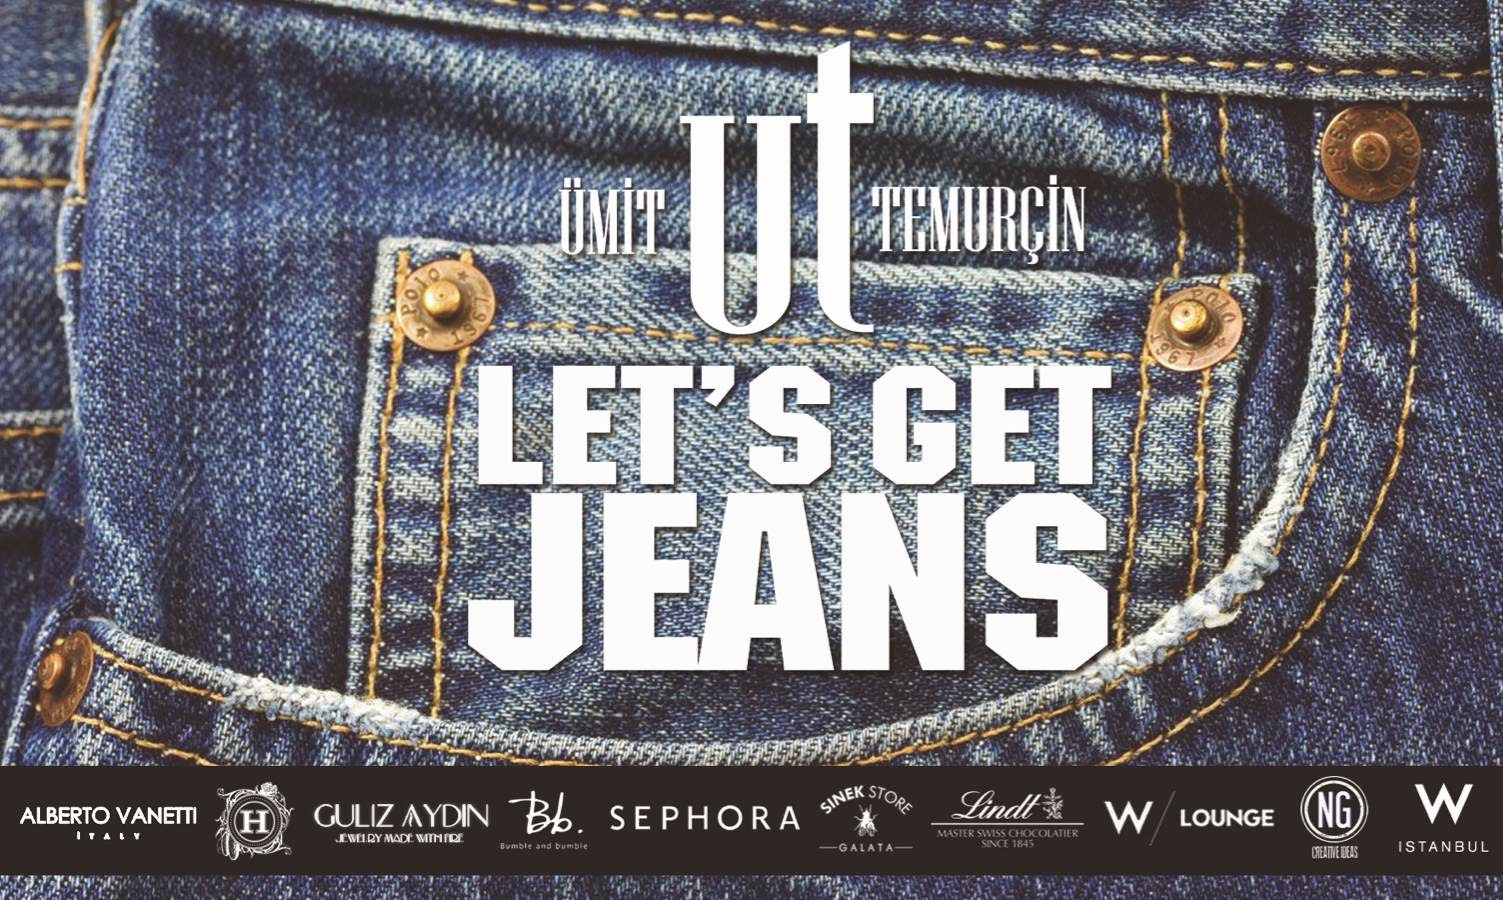 New jeans альбом. Jean gets. Карты Нью джинс get up. Сет карт нев джинс get up. Карты Нью джинс get up Ханни.